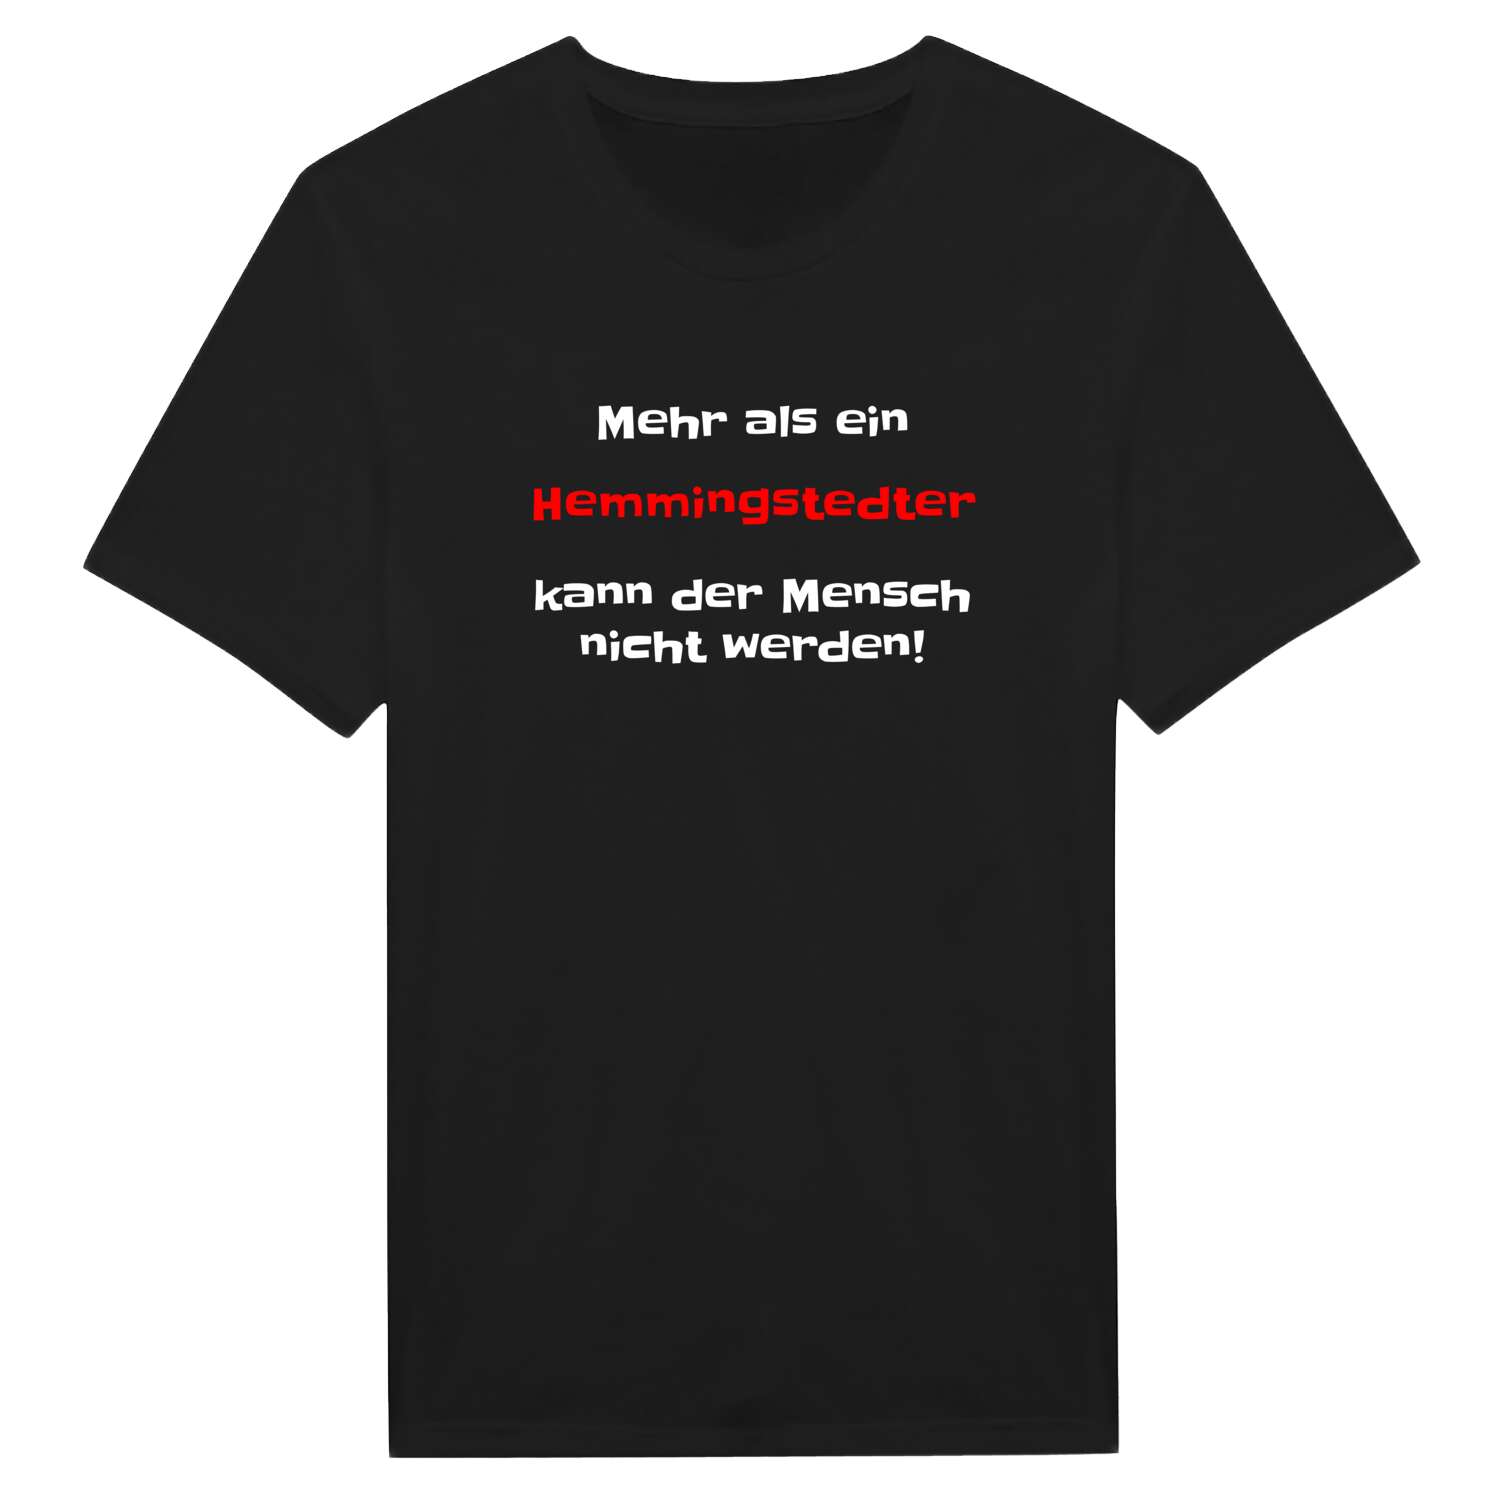 Hemmingstedt T-Shirt »Mehr als ein«